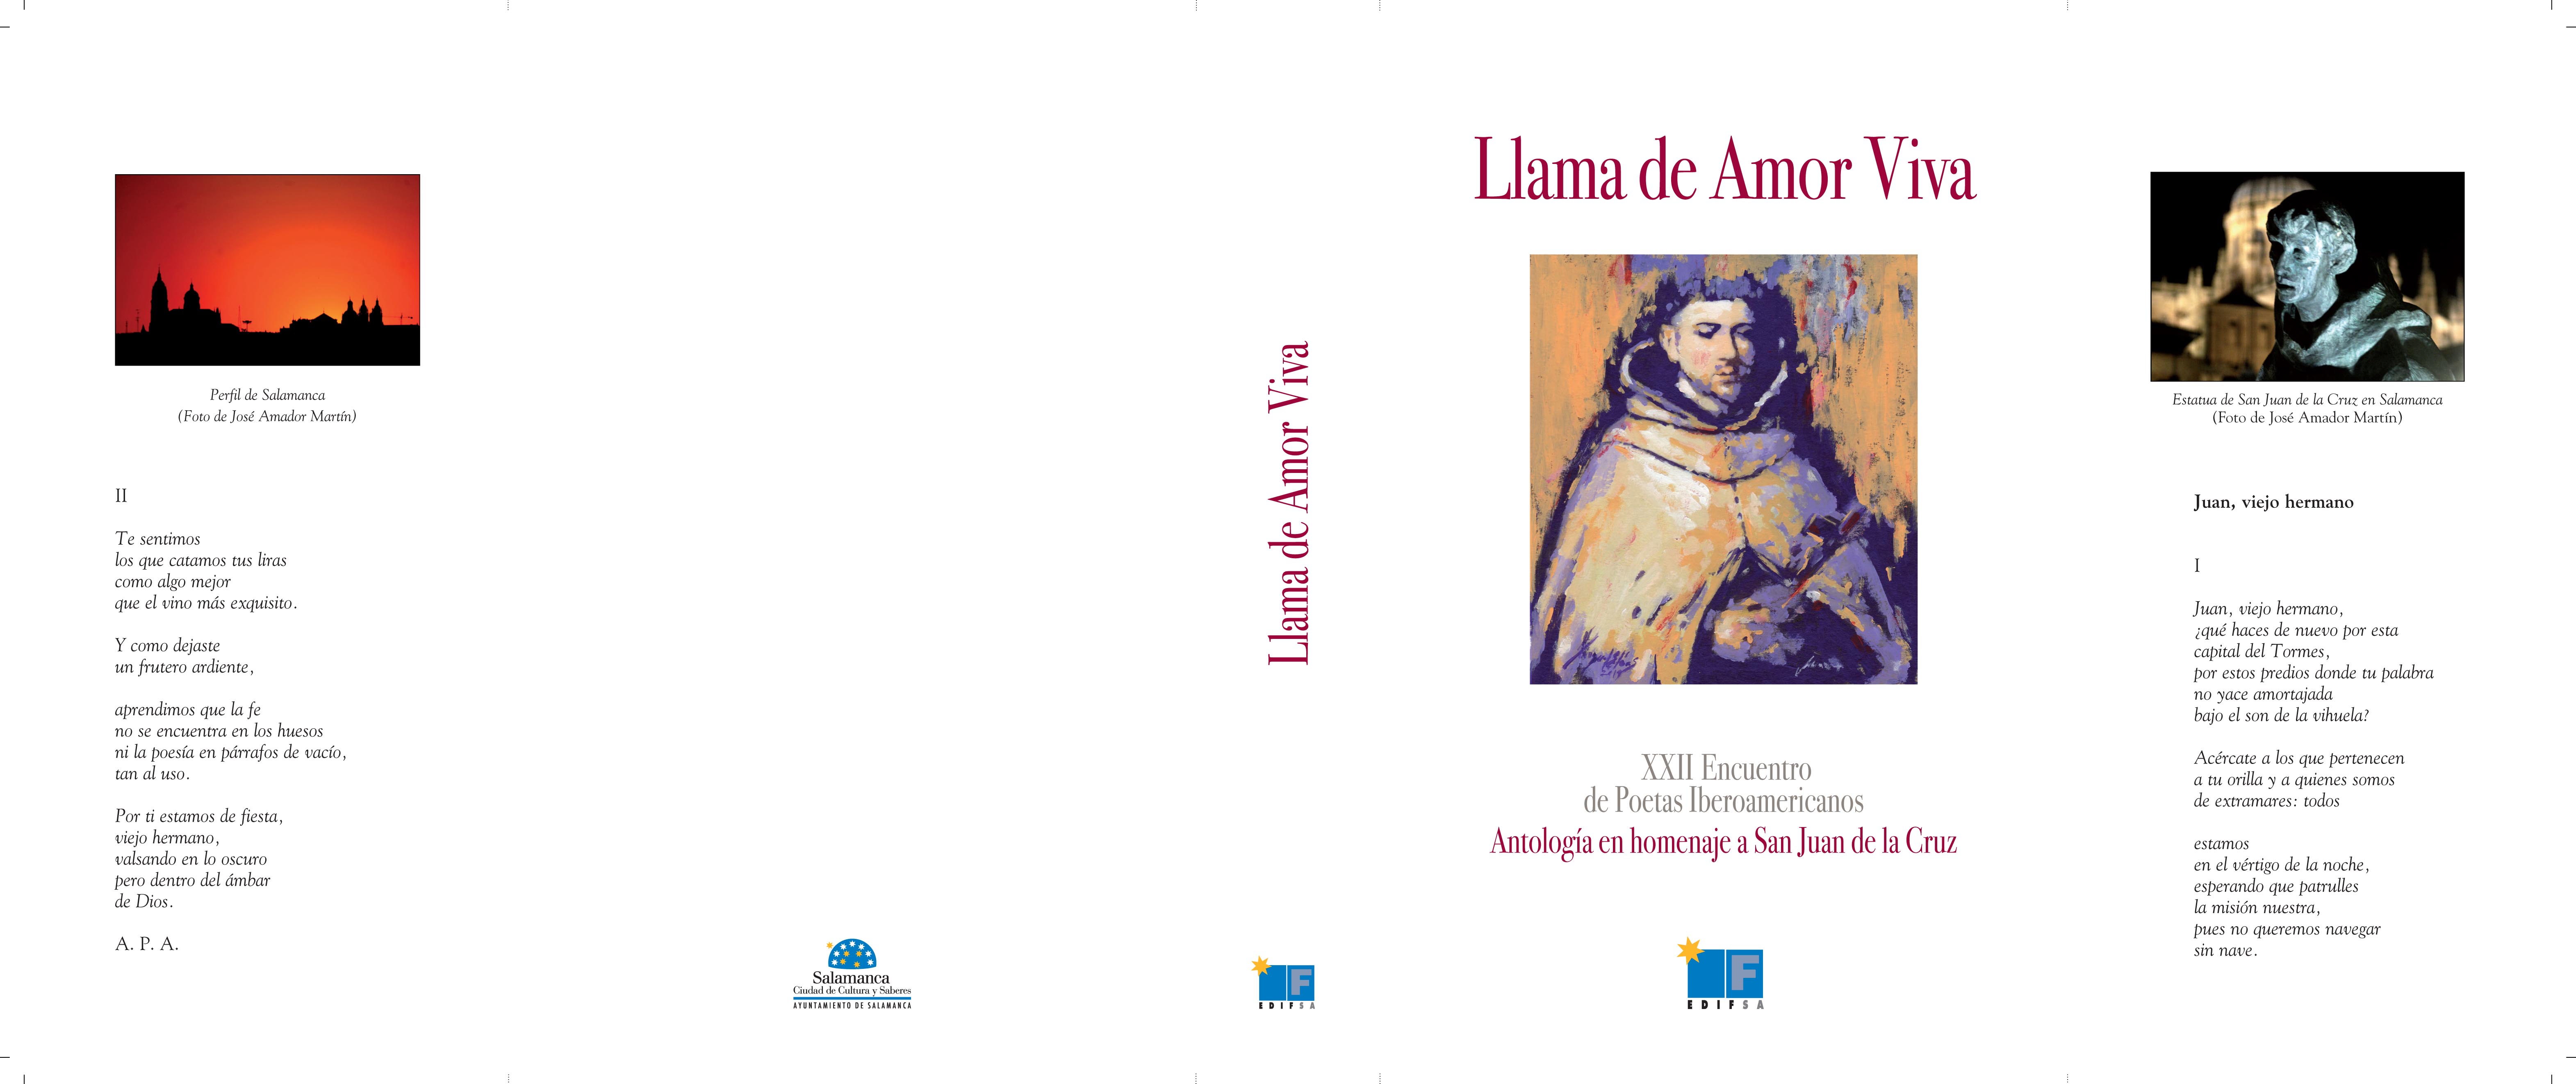 Antología Llama de Amor Viva (Cubierta)